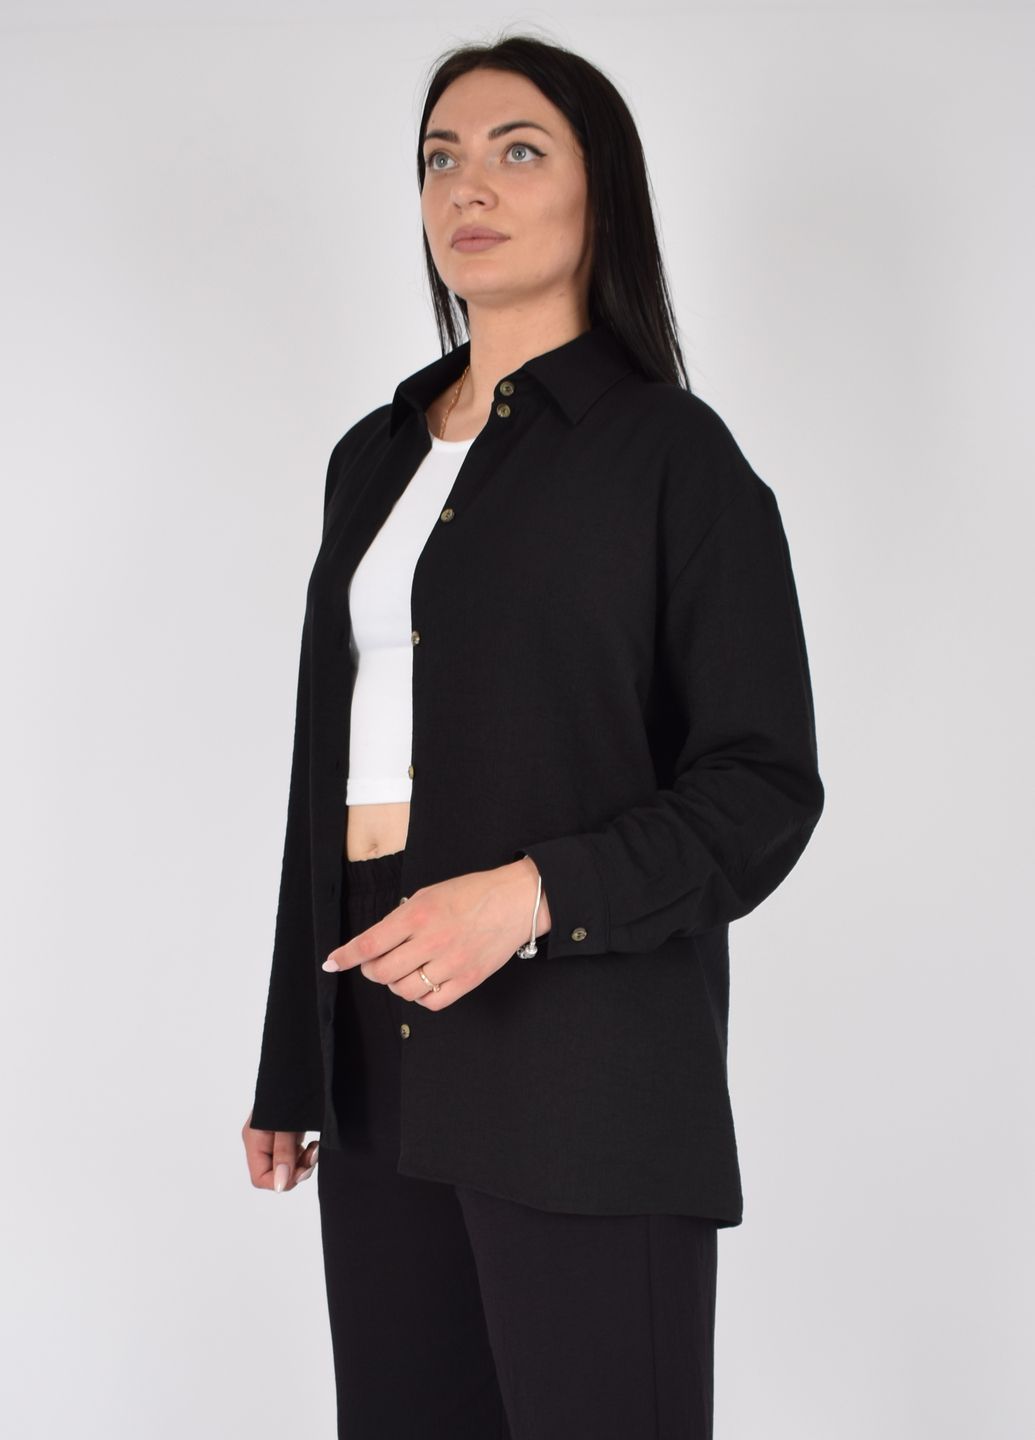 Купить Рубашка женская с длинным рукавом черного цвета из льна Merlini Беллуно 200000068, размер 42-44 в интернет-магазине